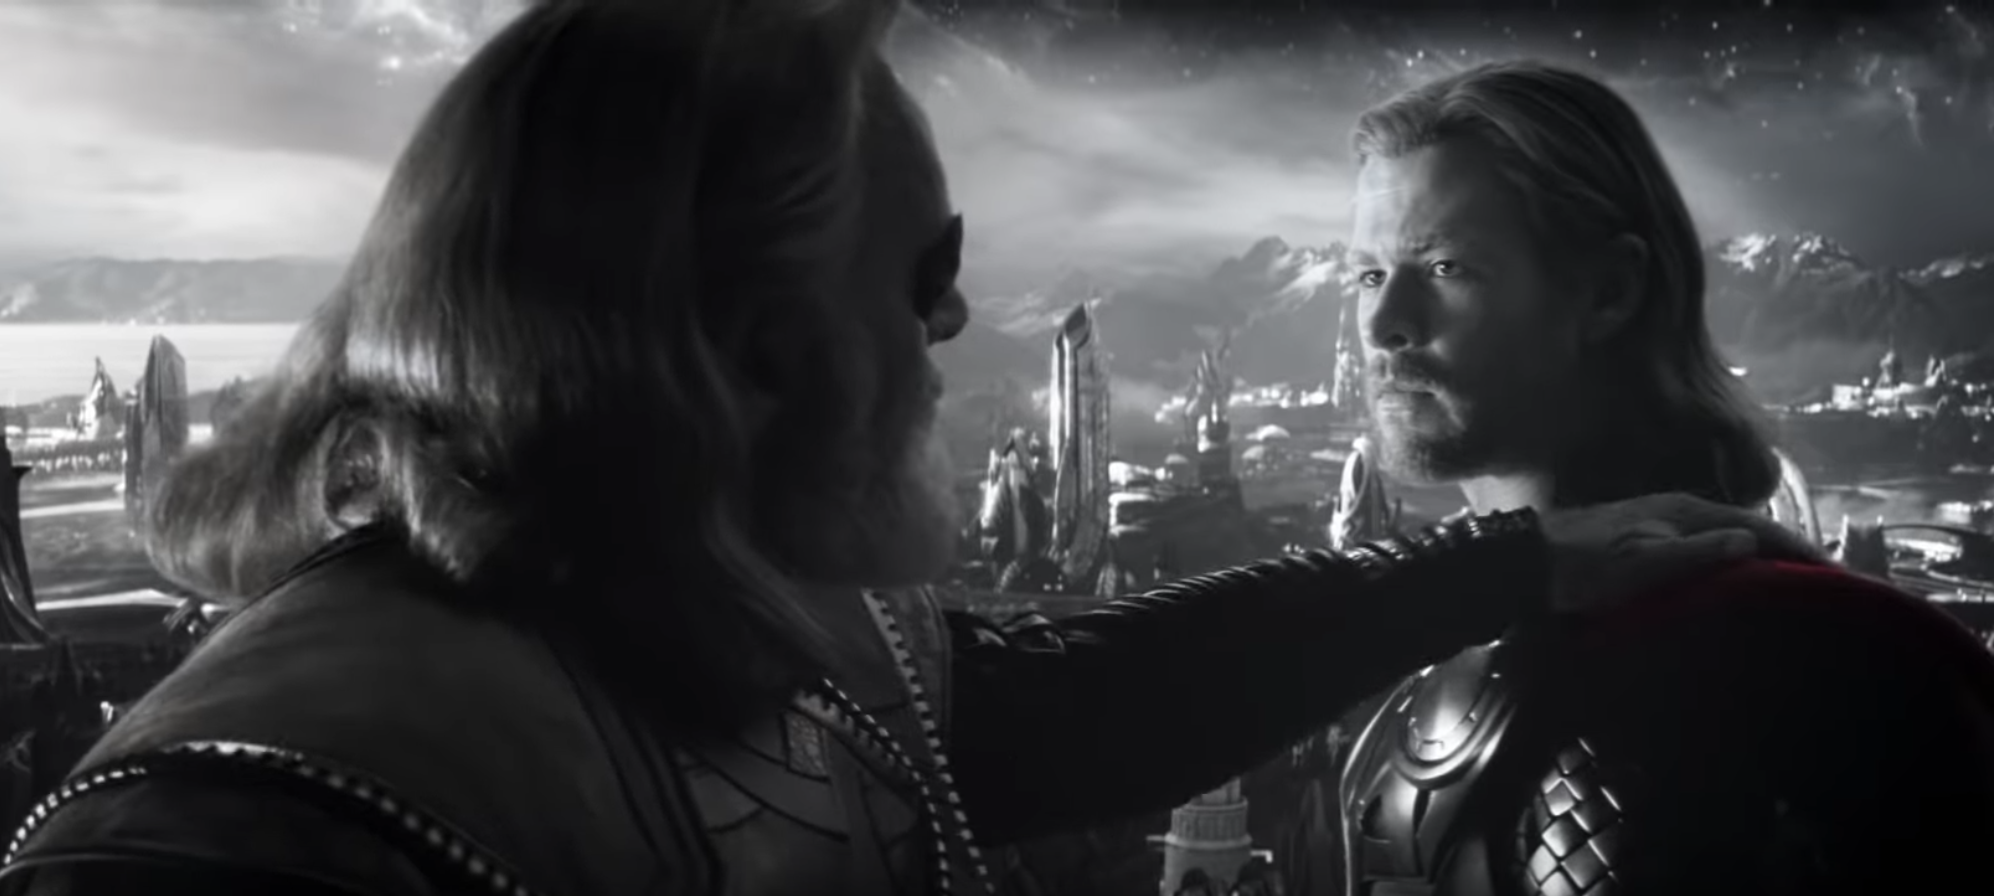 Chris Hemsworth as Thor in Avengers: Endgame trailer